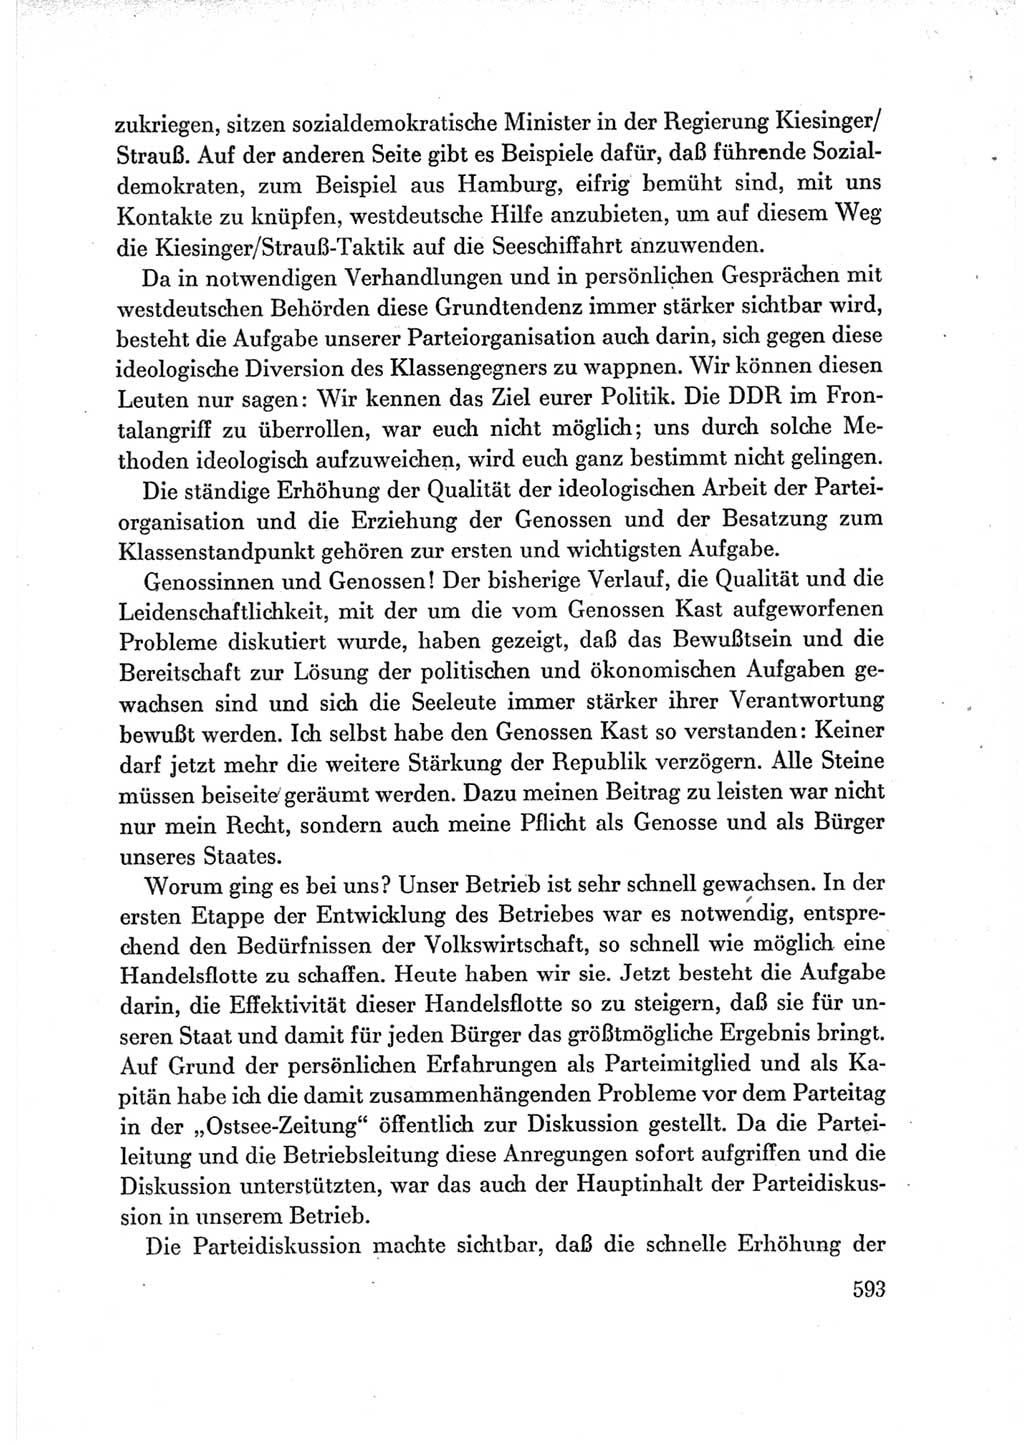 Protokoll der Verhandlungen des Ⅶ. Parteitages der Sozialistischen Einheitspartei Deutschlands (SED) [Deutsche Demokratische Republik (DDR)] 1967, Band Ⅲ, Seite 593 (Prot. Verh. Ⅶ. PT SED DDR 1967, Bd. Ⅲ, S. 593)